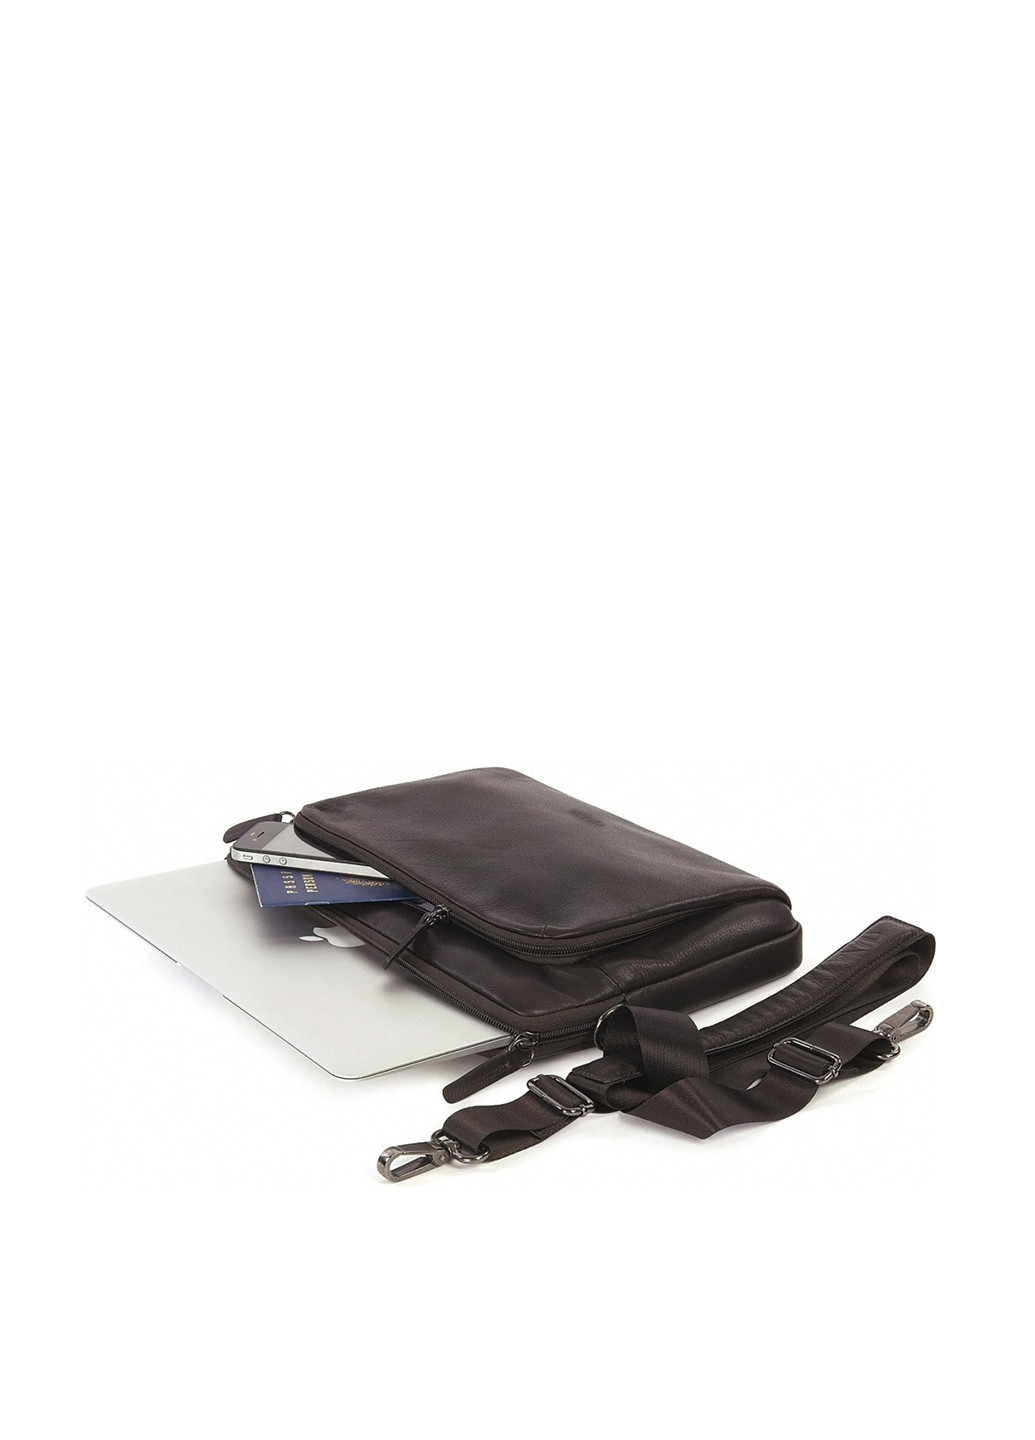 Сумка для ноутбука зі шкіри One Premium sleeve 11 Brown (коричнева) Tucano bfop11-m (133590936)